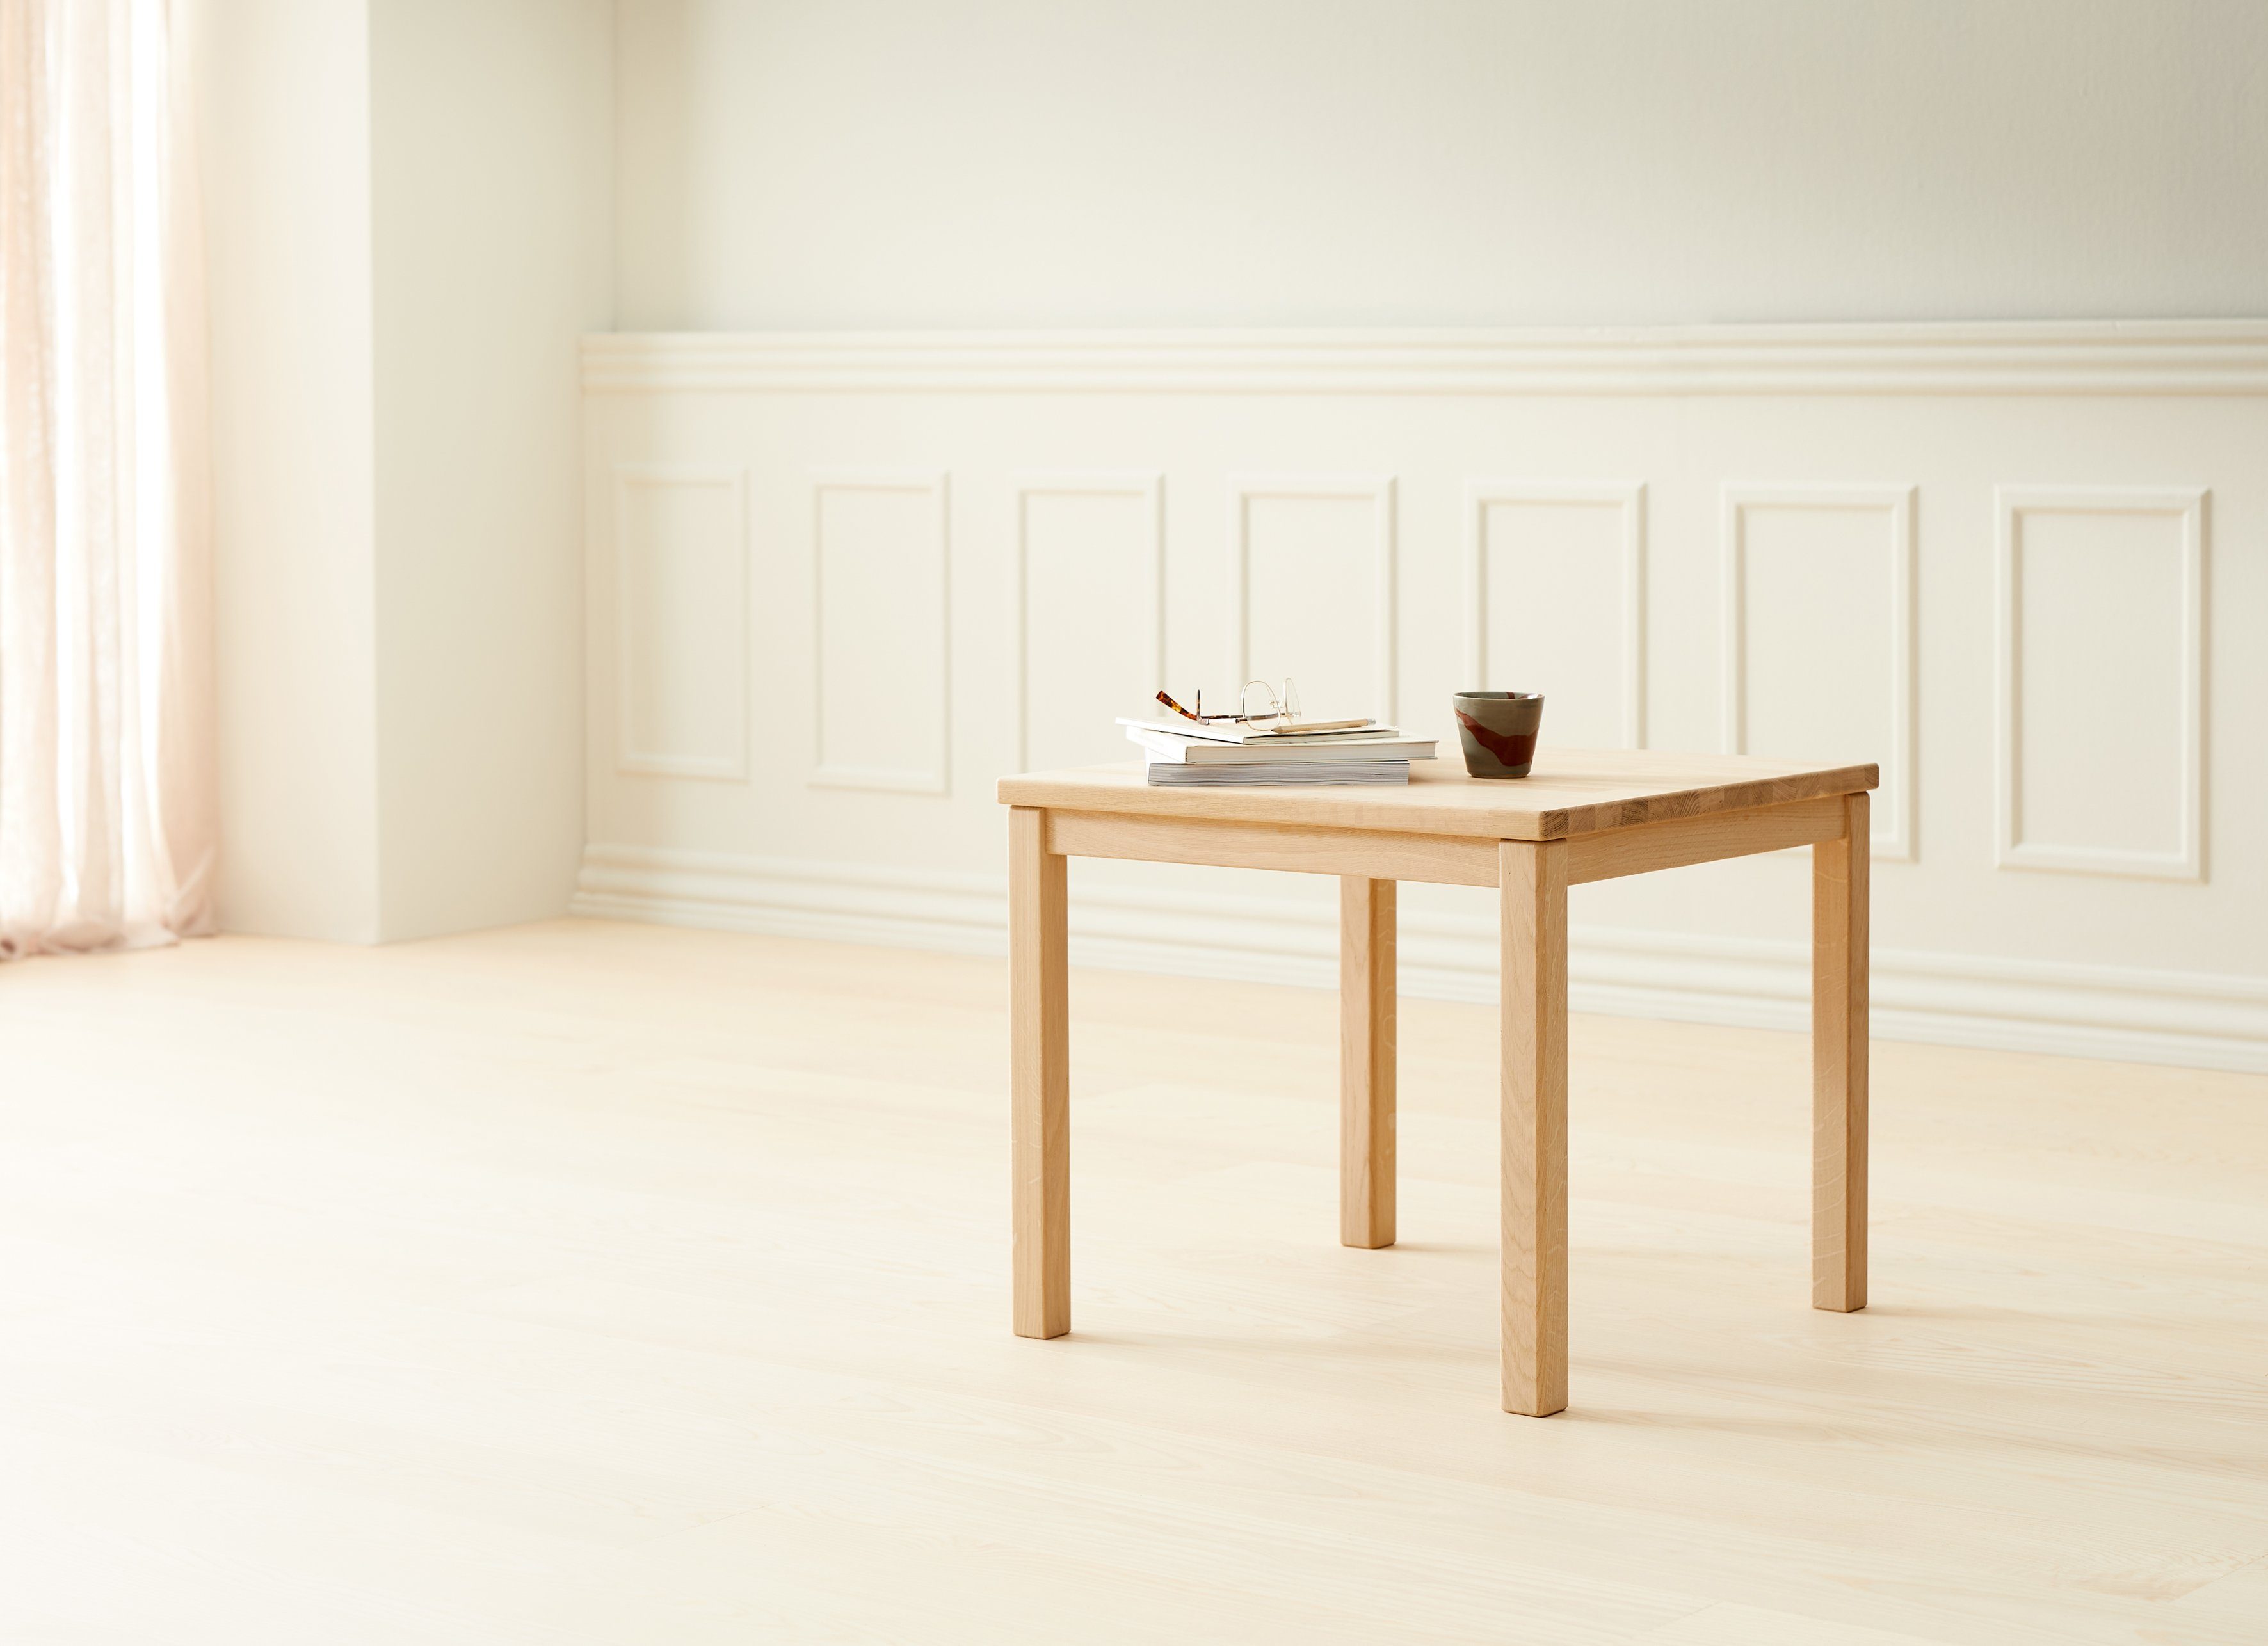 Hammel Furniture aus by Holzarten, Platte Ausklappen zwei Couchtisch Basic in zum mit eine Marcus, Massivholz, Hammel Eiche